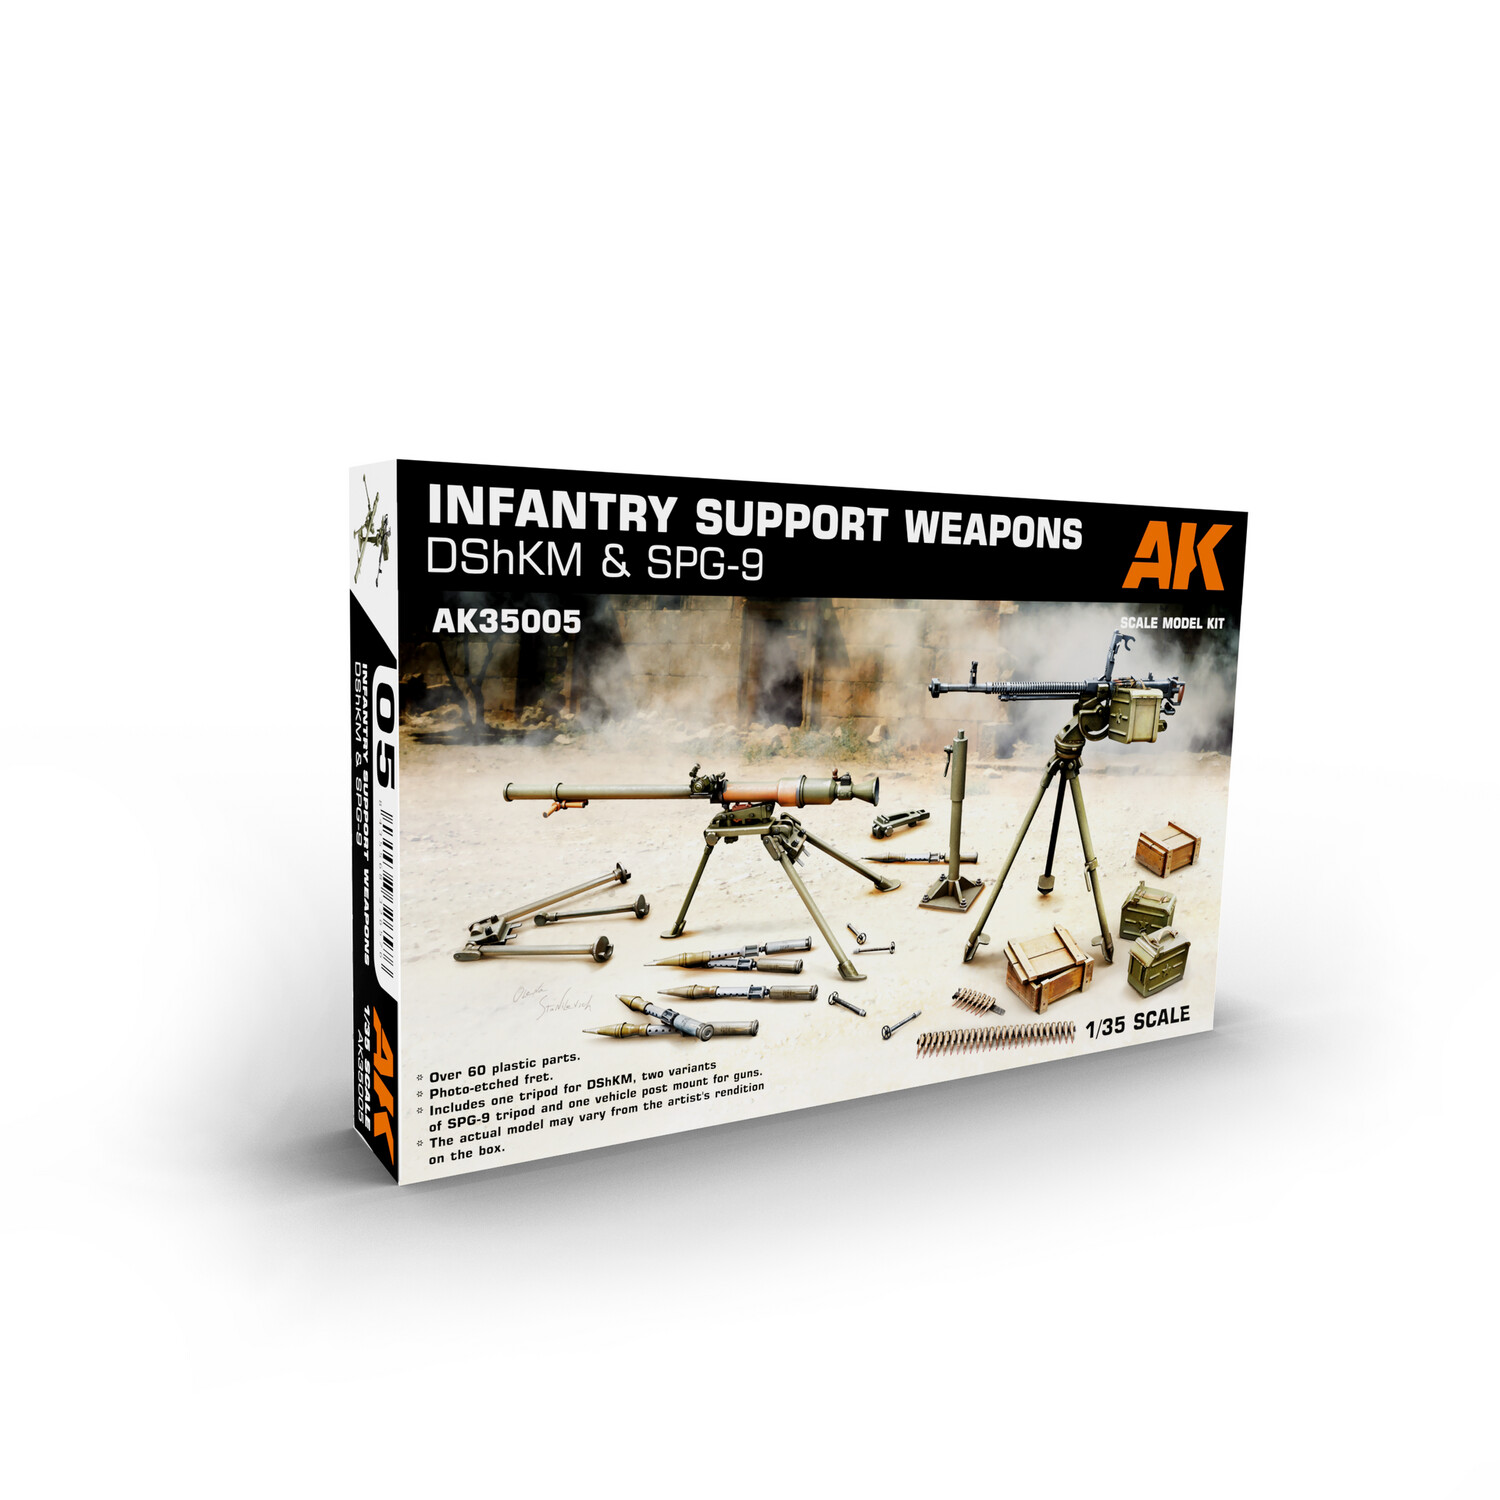 AK AK35005 - Infantry Support Weapon DShKM & SPG - 9